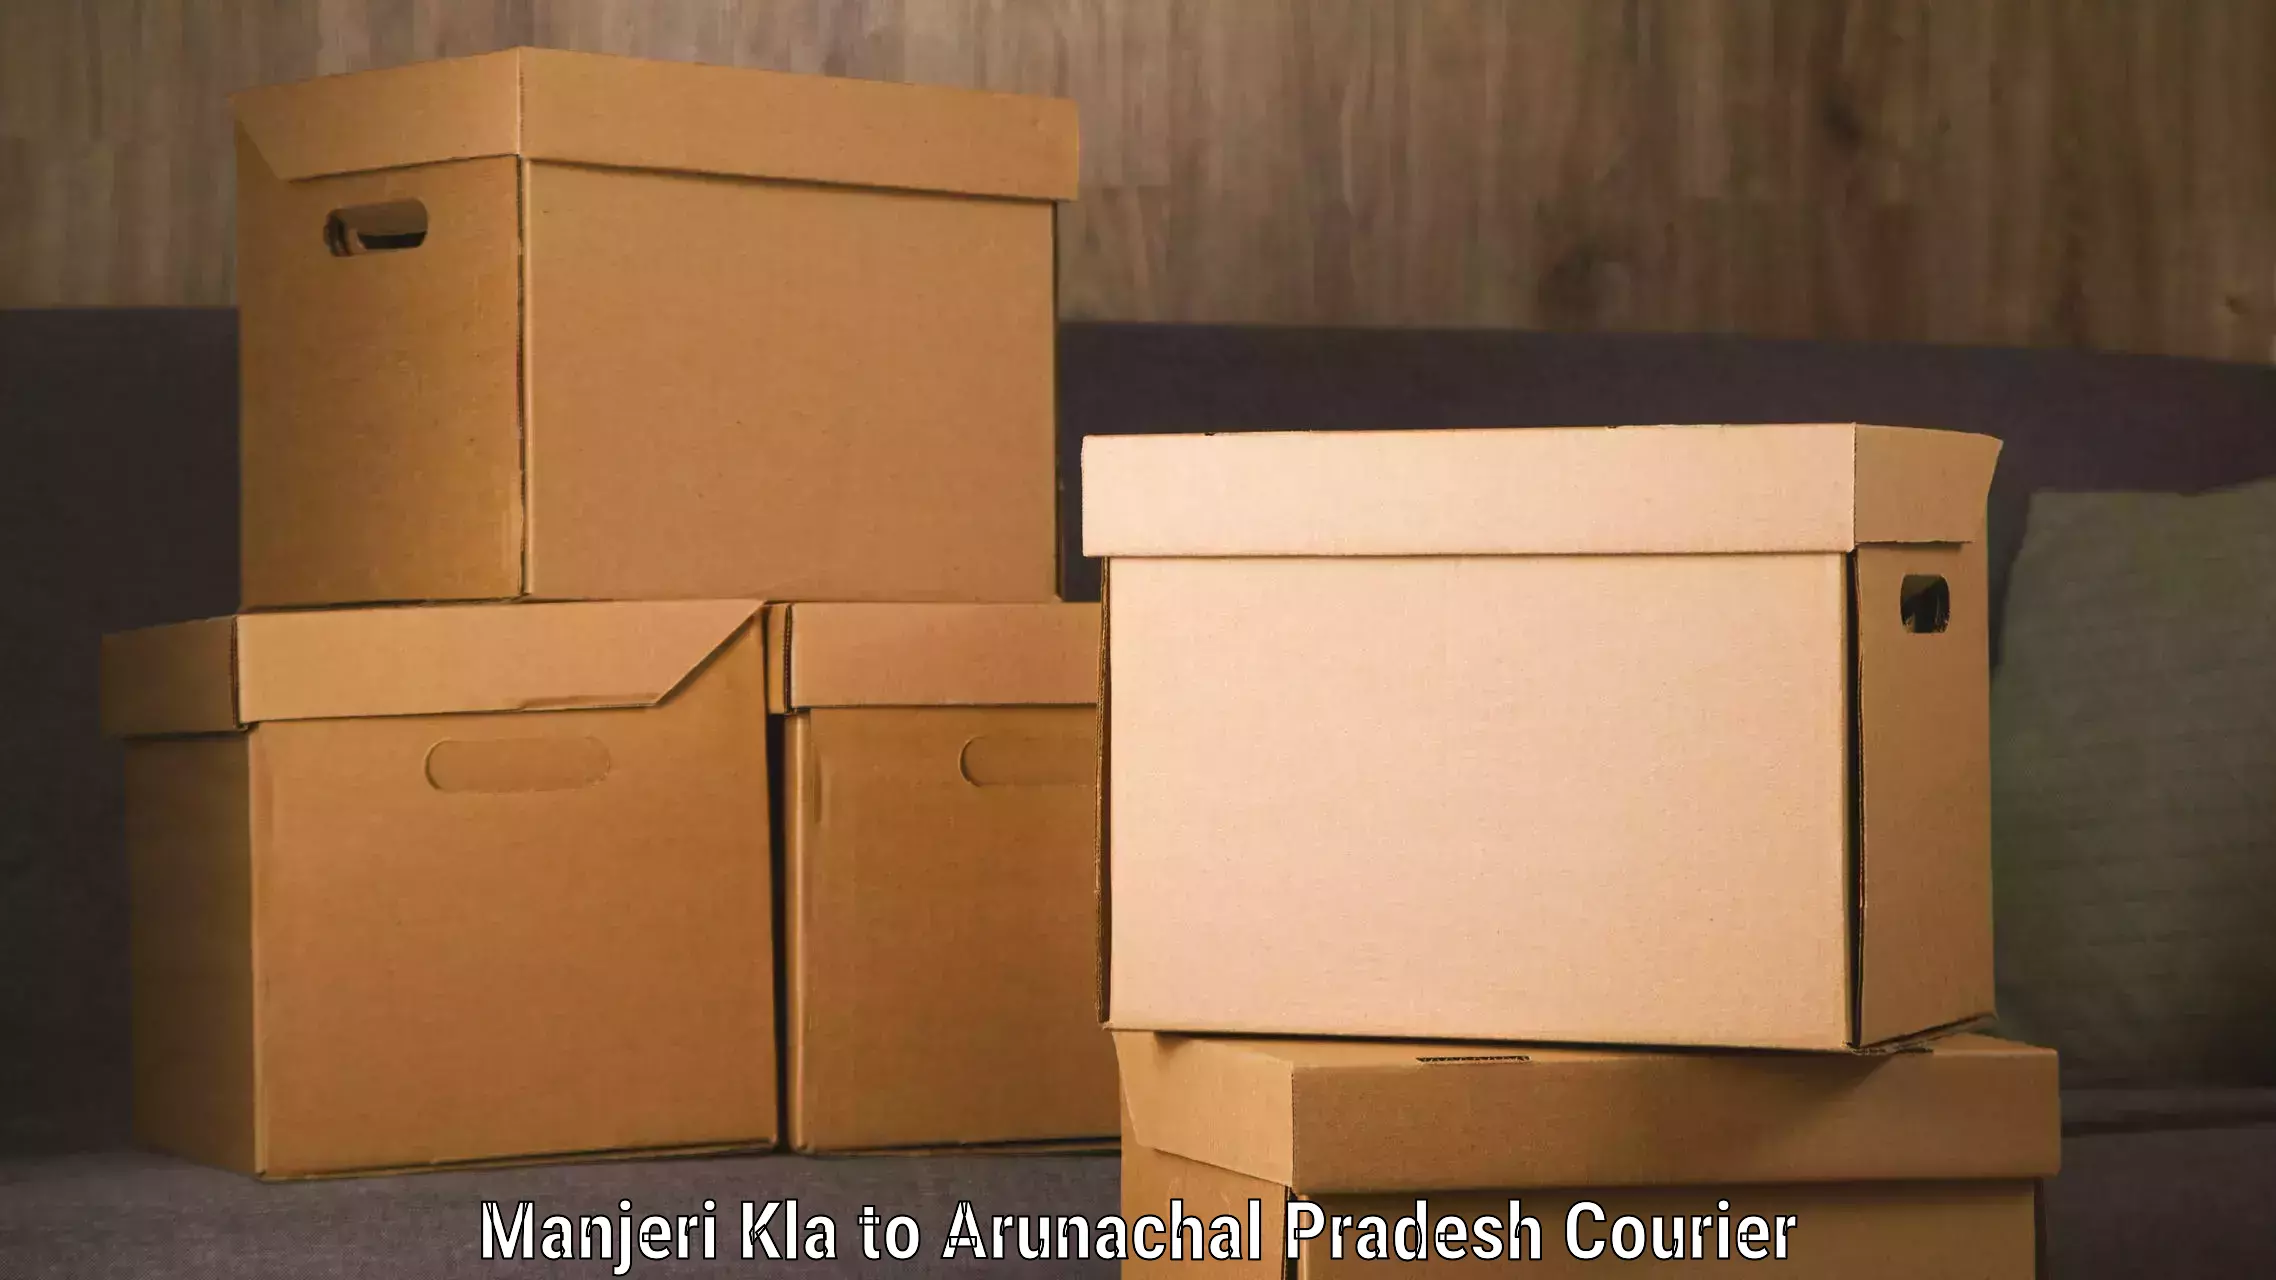 Express mail solutions Manjeri Kla to Arunachal Pradesh